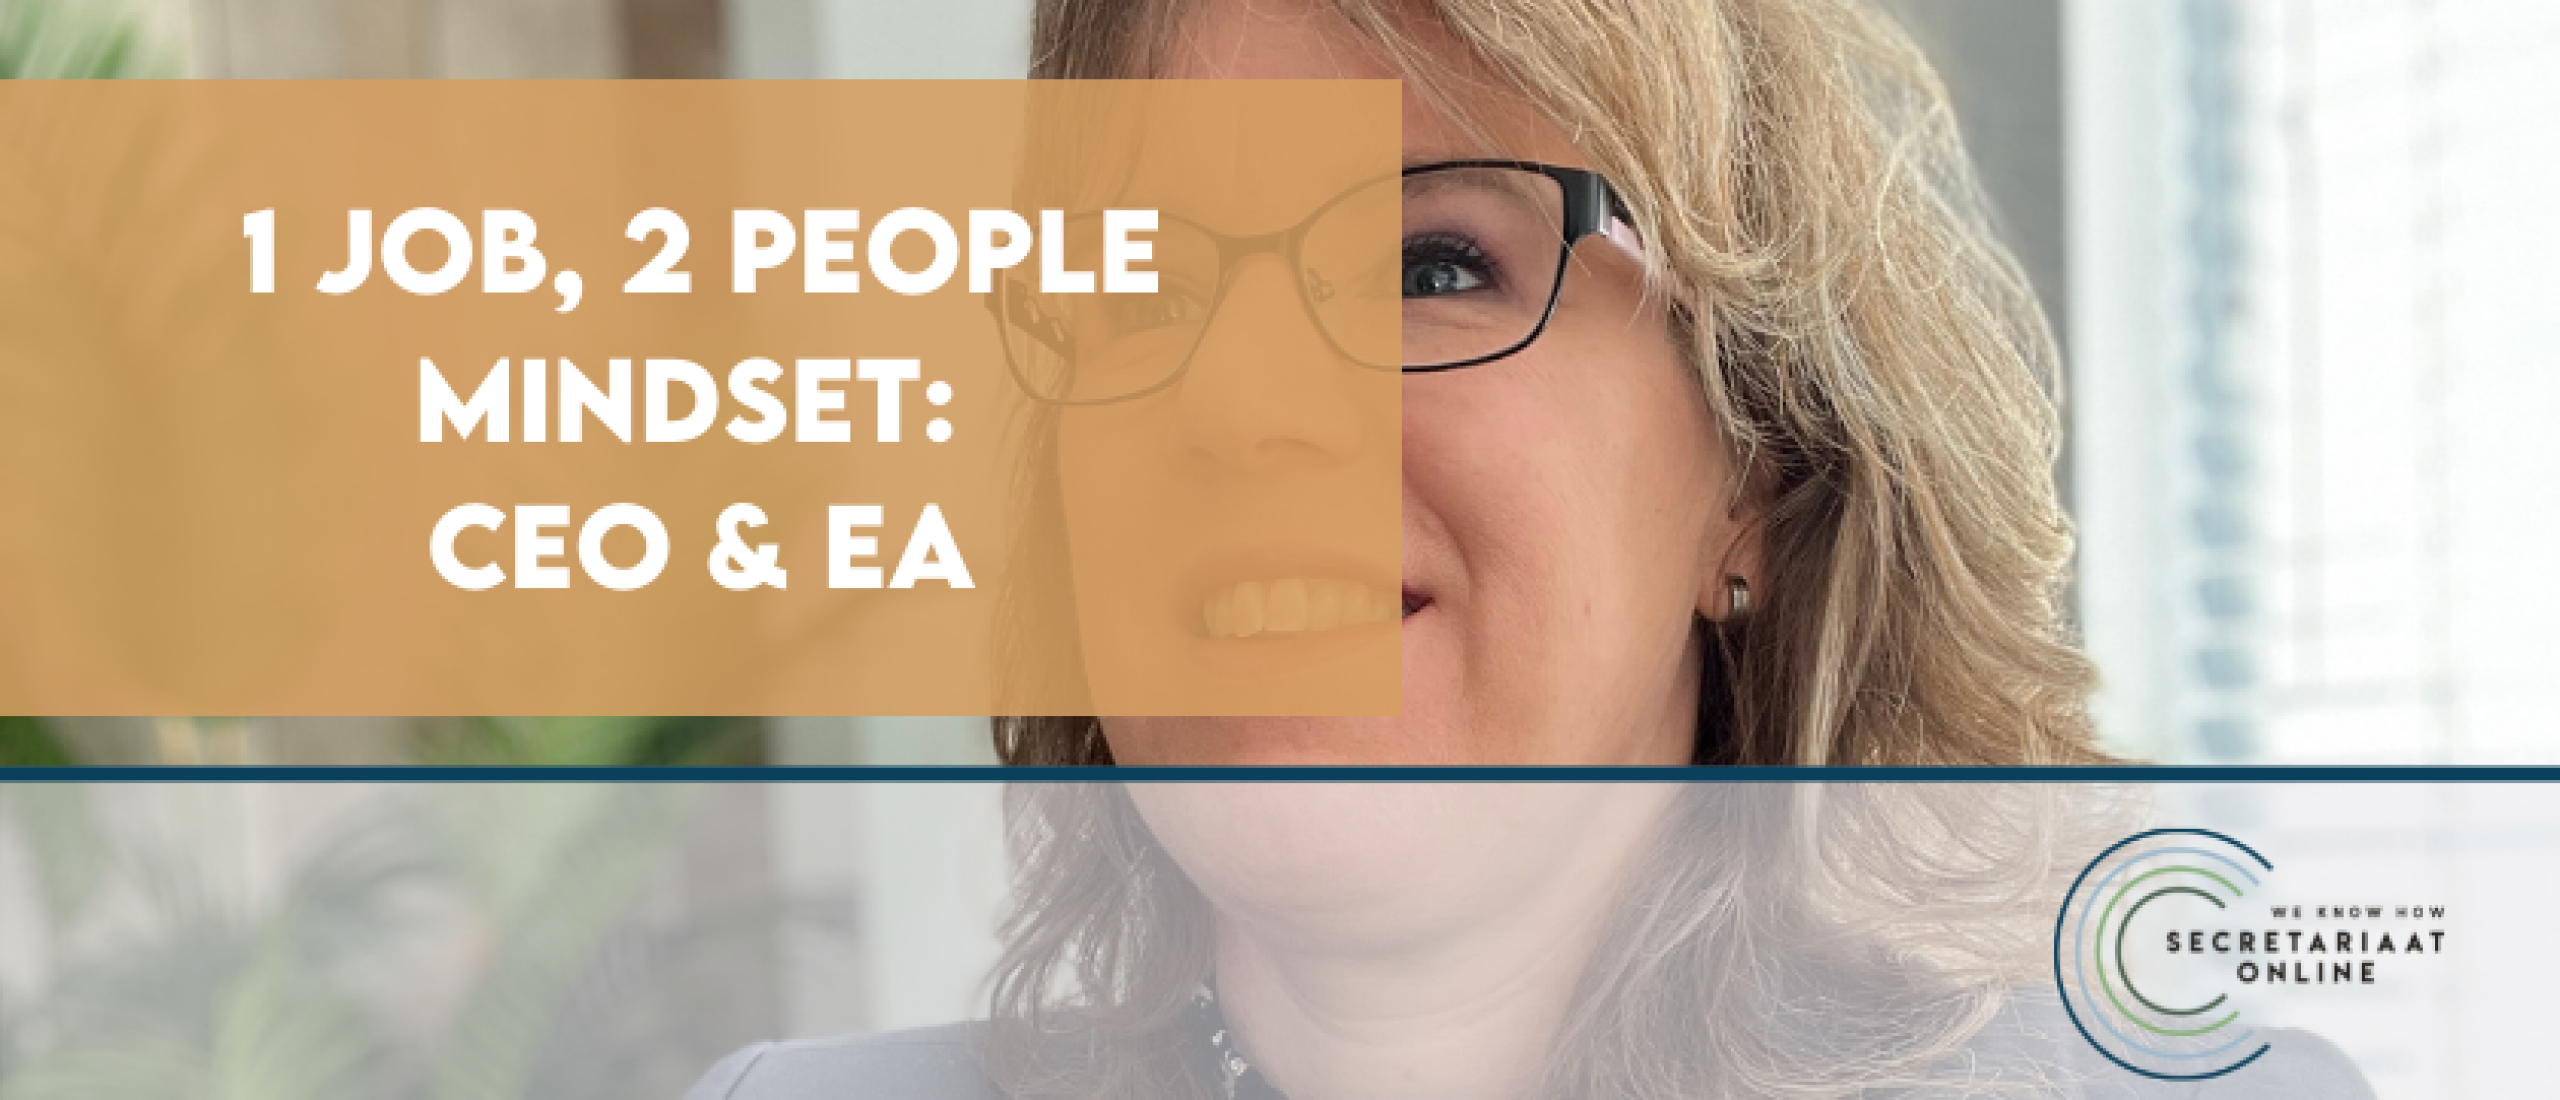 1 job, 2 people mindset: CEO & EA